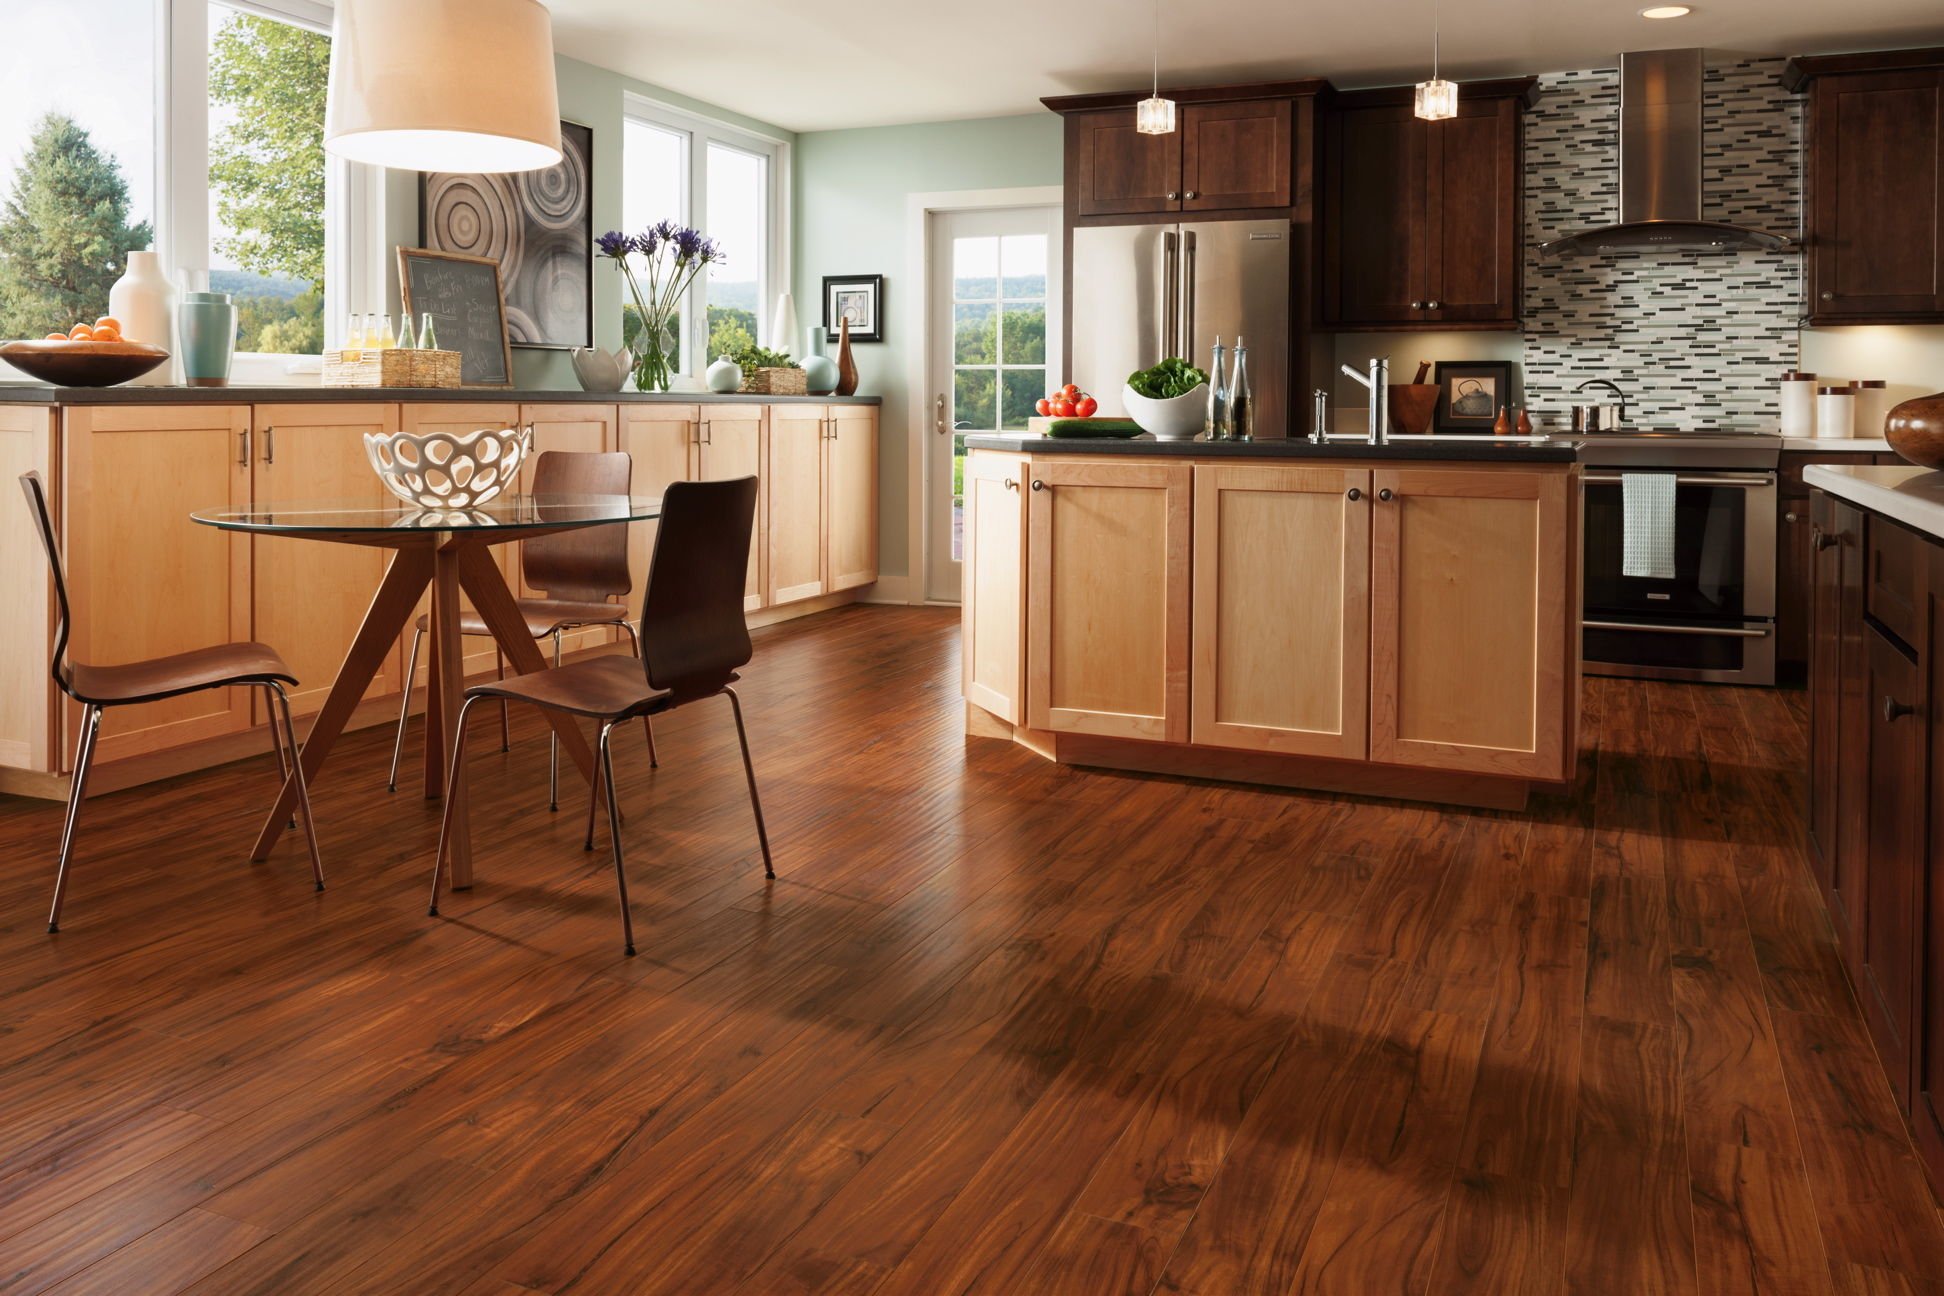 Mẫu sàn gỗ có họa tiết bề mặt tự nhiên và bóng bẩy, phù hợp với mọi không gian nội thất nhà ở